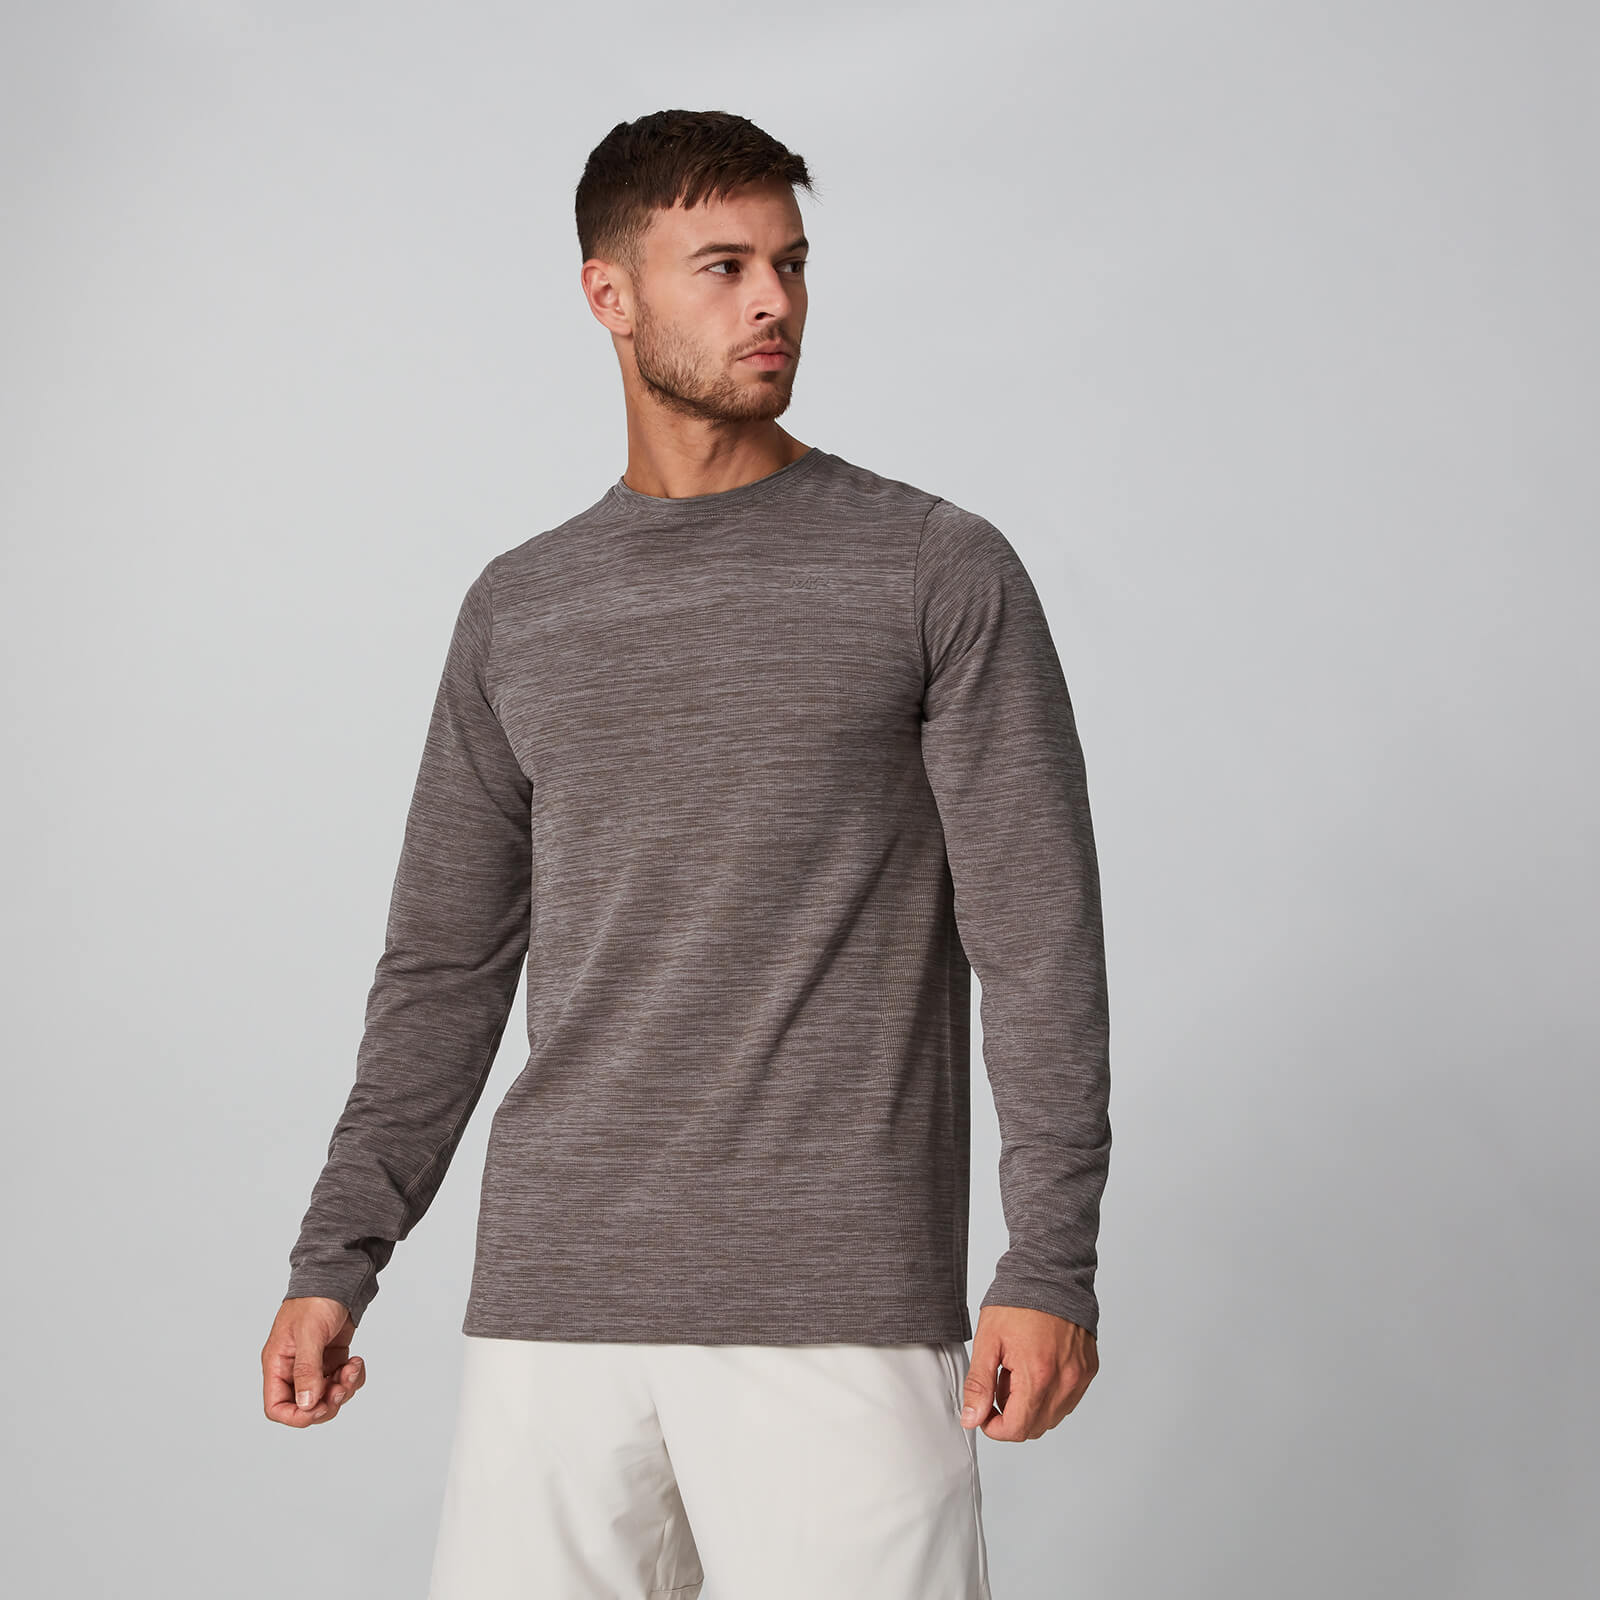 Lightweight Seamless Long-Sleeve T-Shirt - Driftwood Marl - S